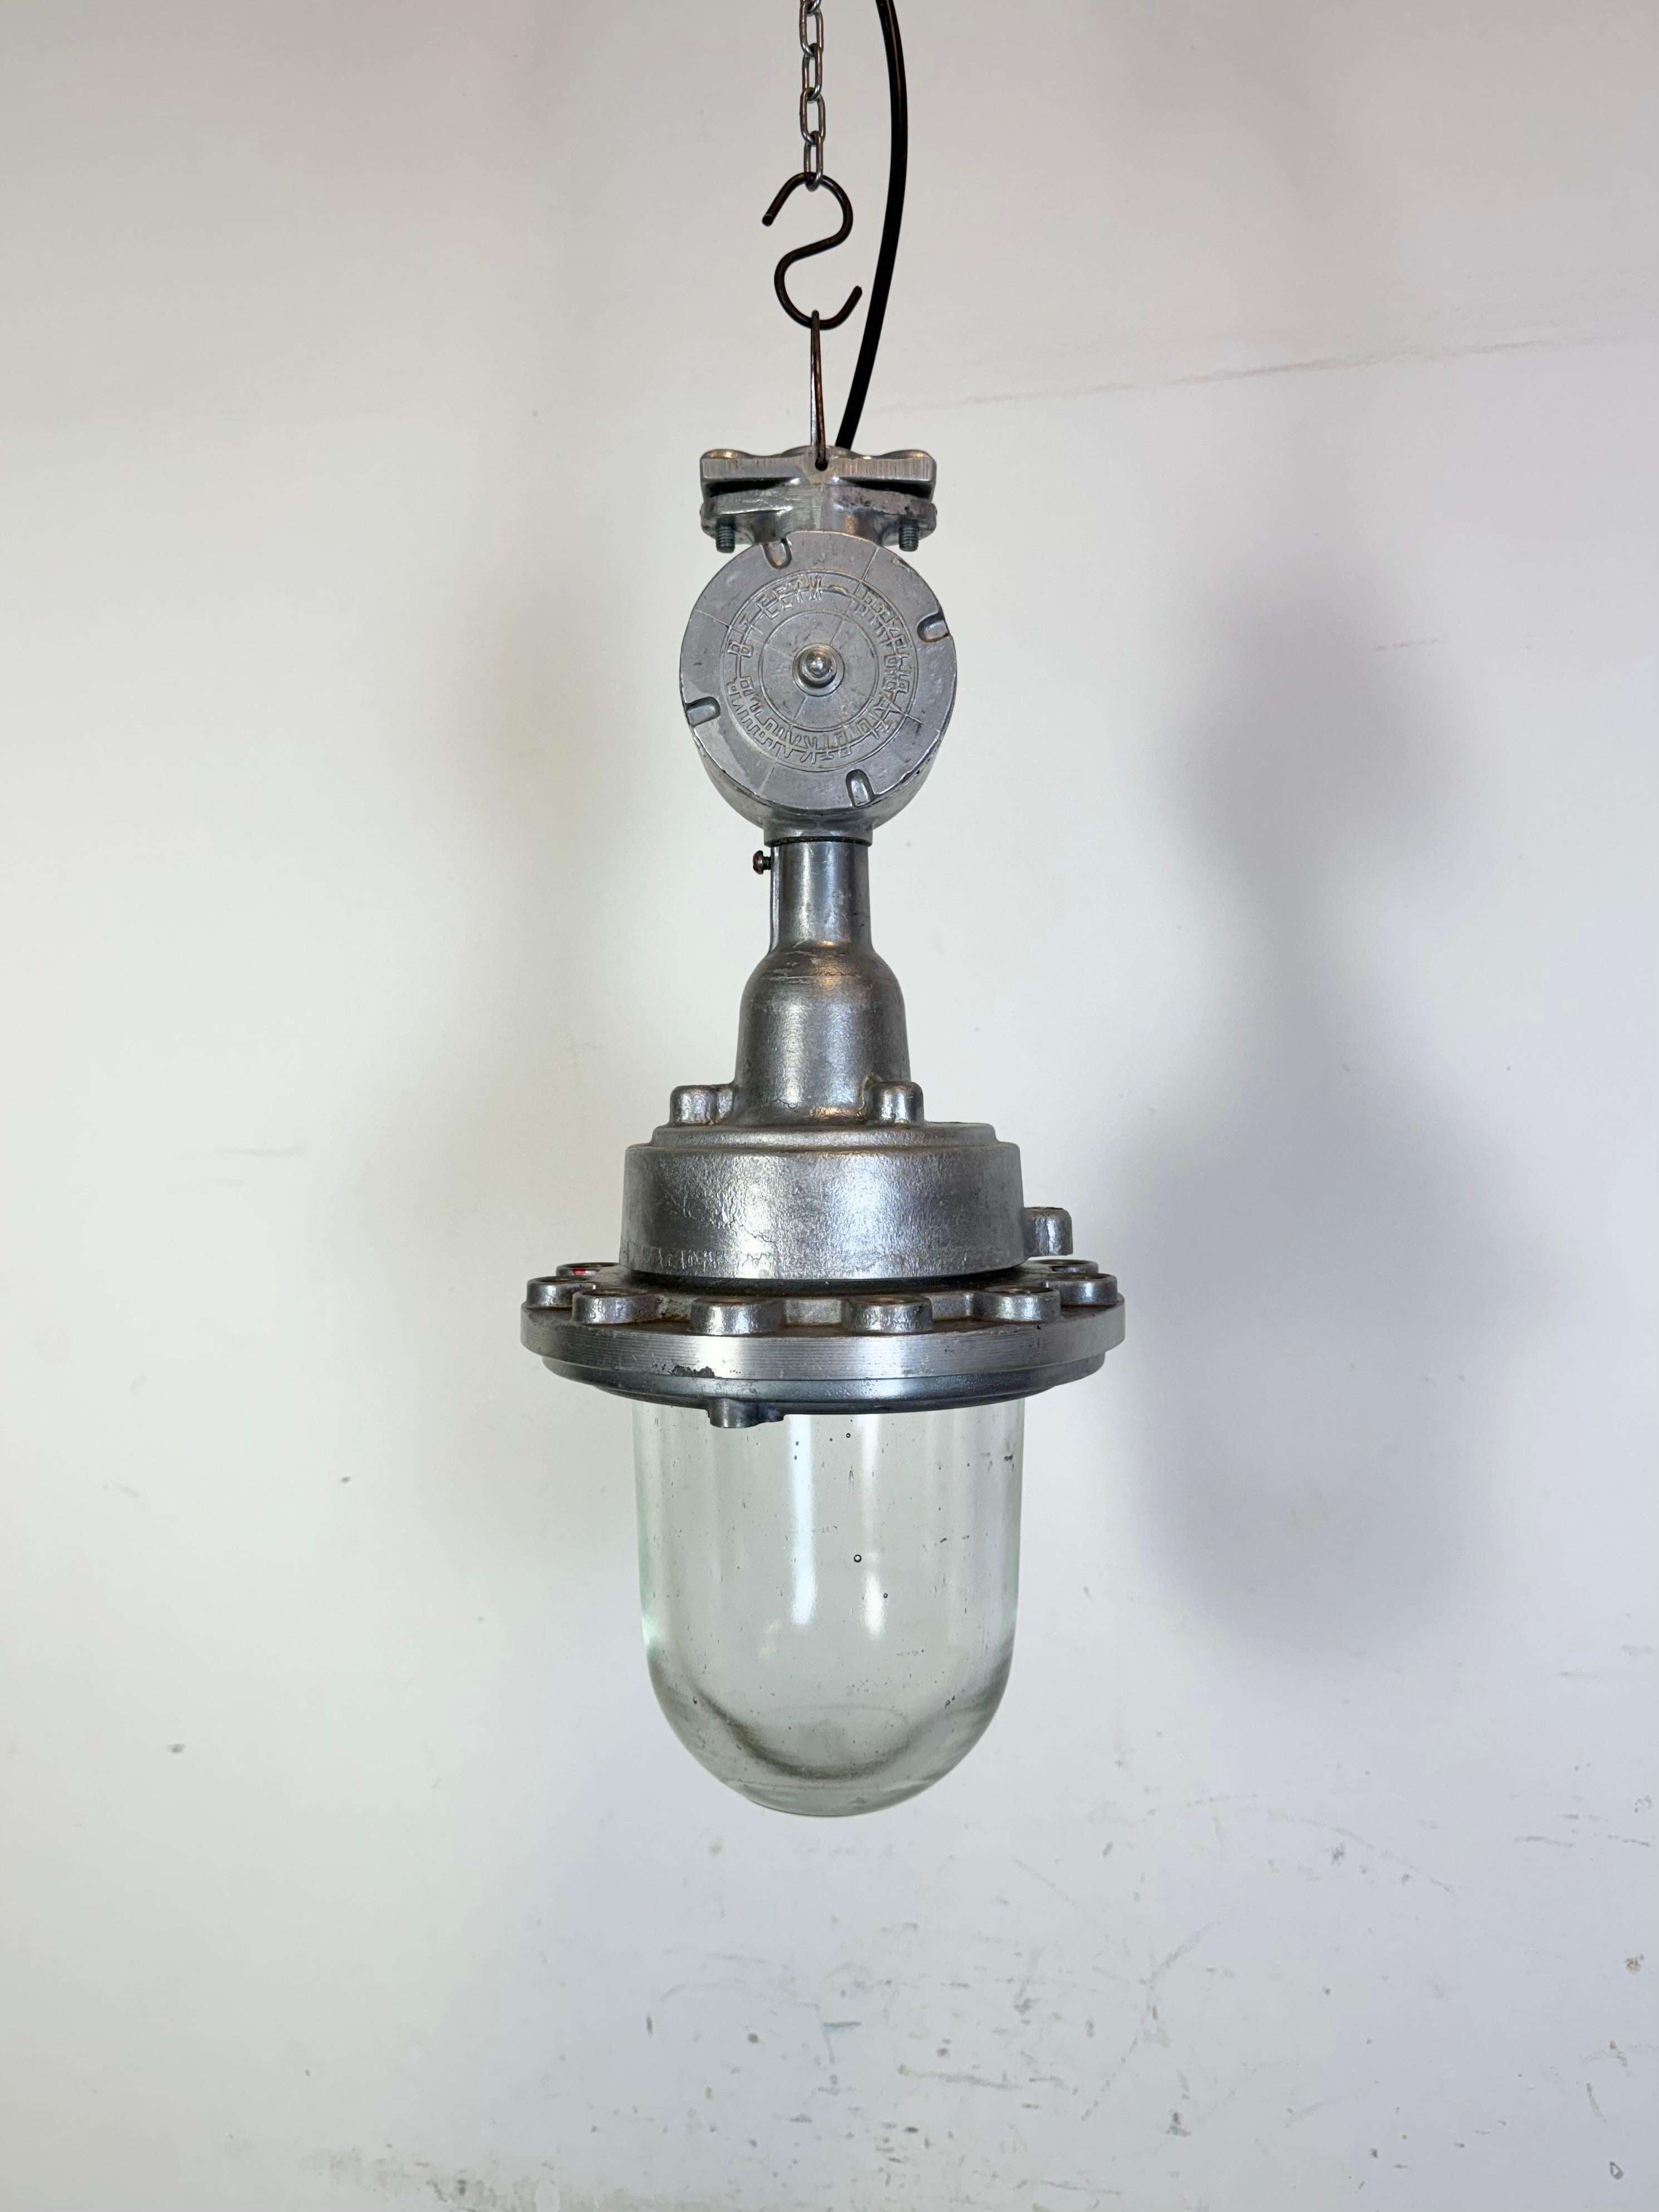 - Vintage Industrial Fabrik Licht aus den 1960er Jahren 
- Hergestellt in der Ukraine in der ehemaligen Sowjetunion
- Gehäuse aus Aluminiumguss
- Klarglas
- Sockel erfordert Standard E27/ E26 Glühbirnen 
- Neues Kabel 
- Durchmesser der Lampe: 23